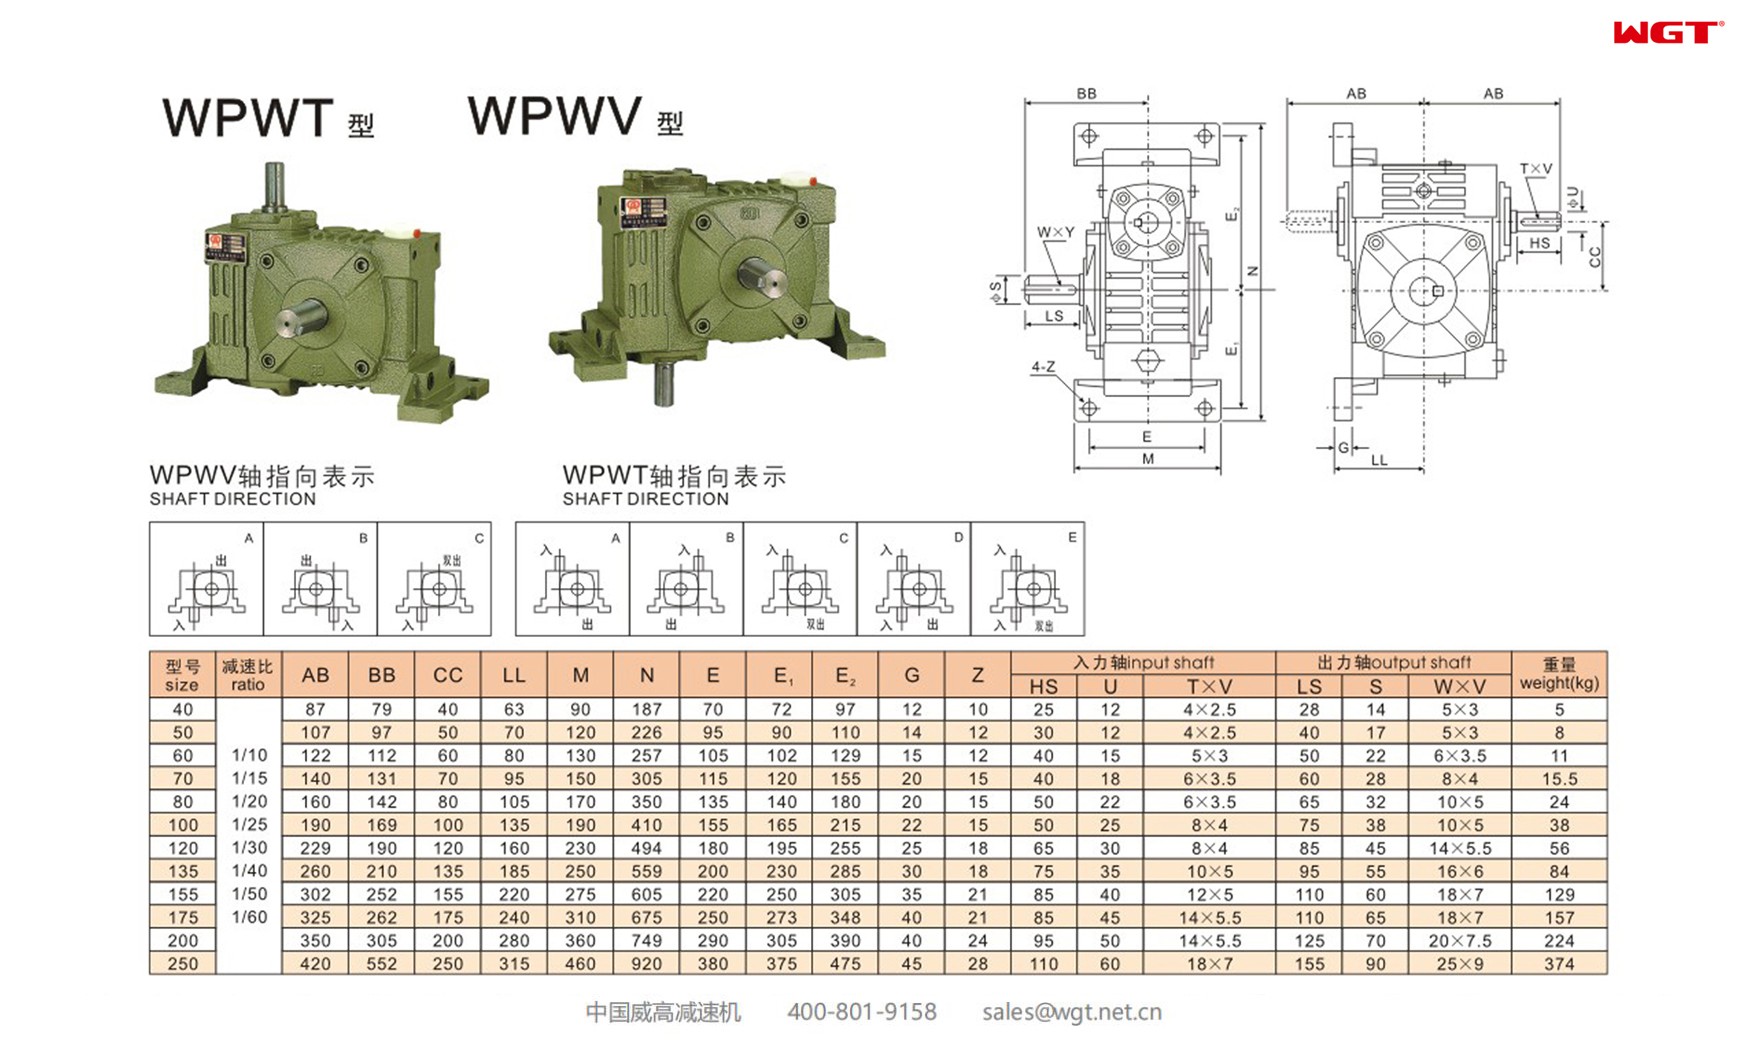 WPWV200 worm gear reducer universal speed reducer 